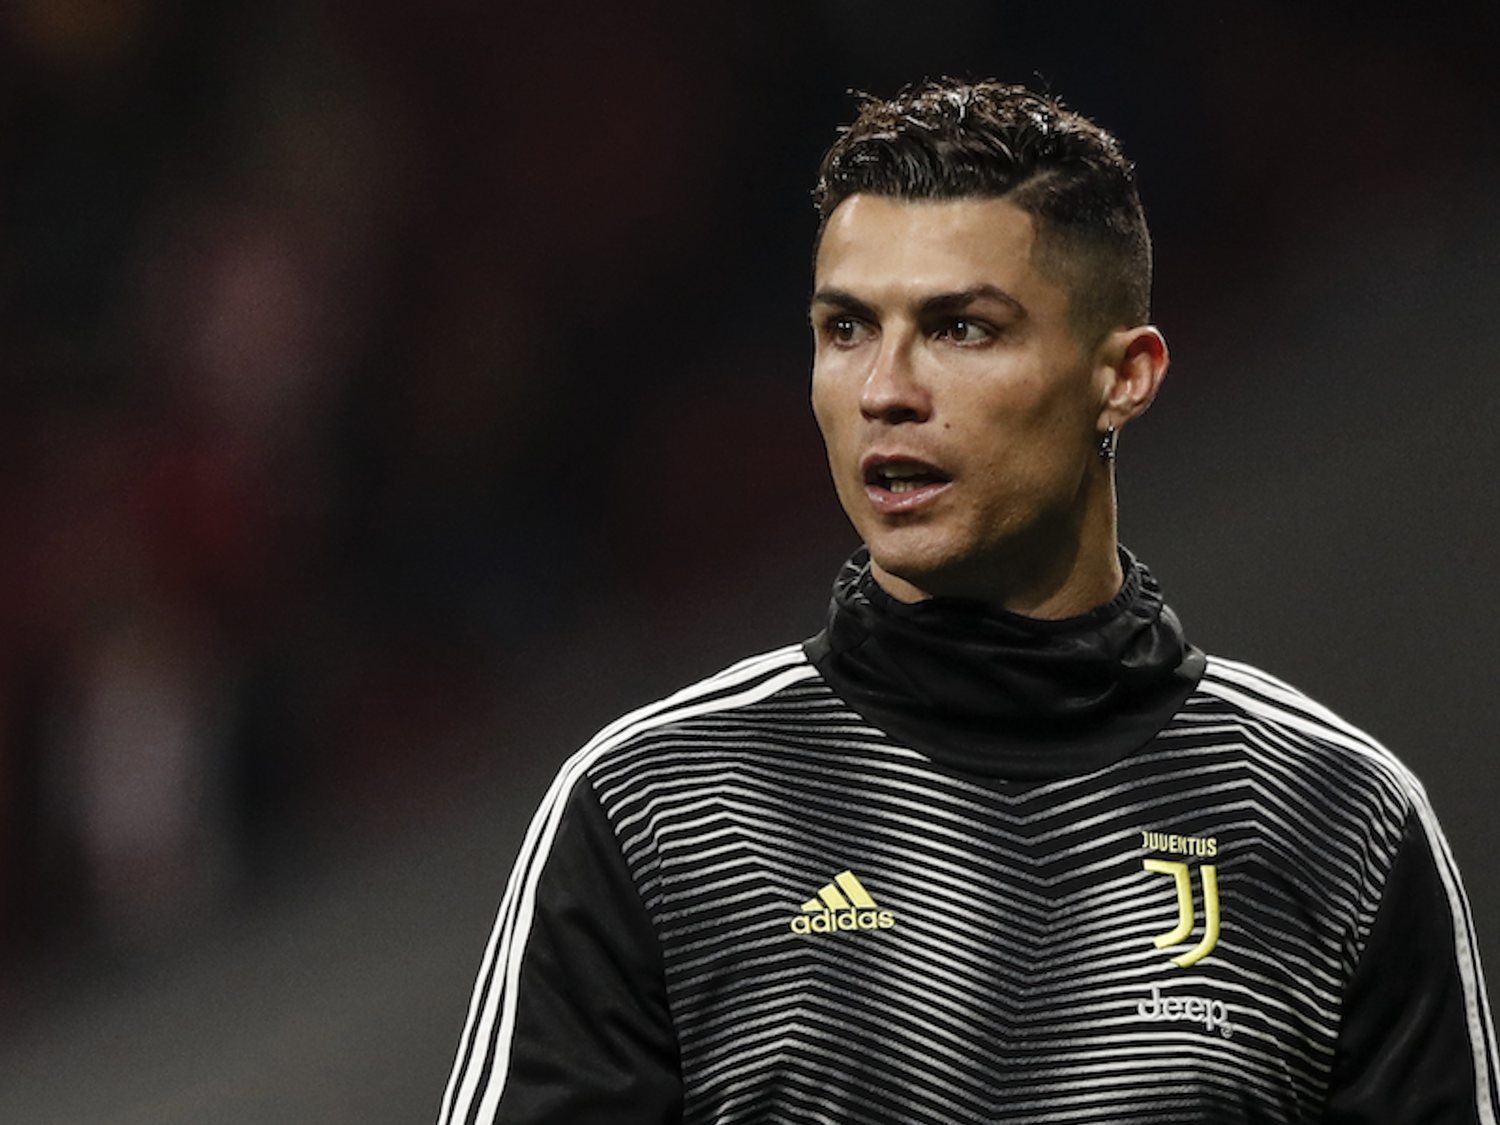 La Fiscalía retira los cargos de violación contra Cristiano Ronaldo por falta de pruebas